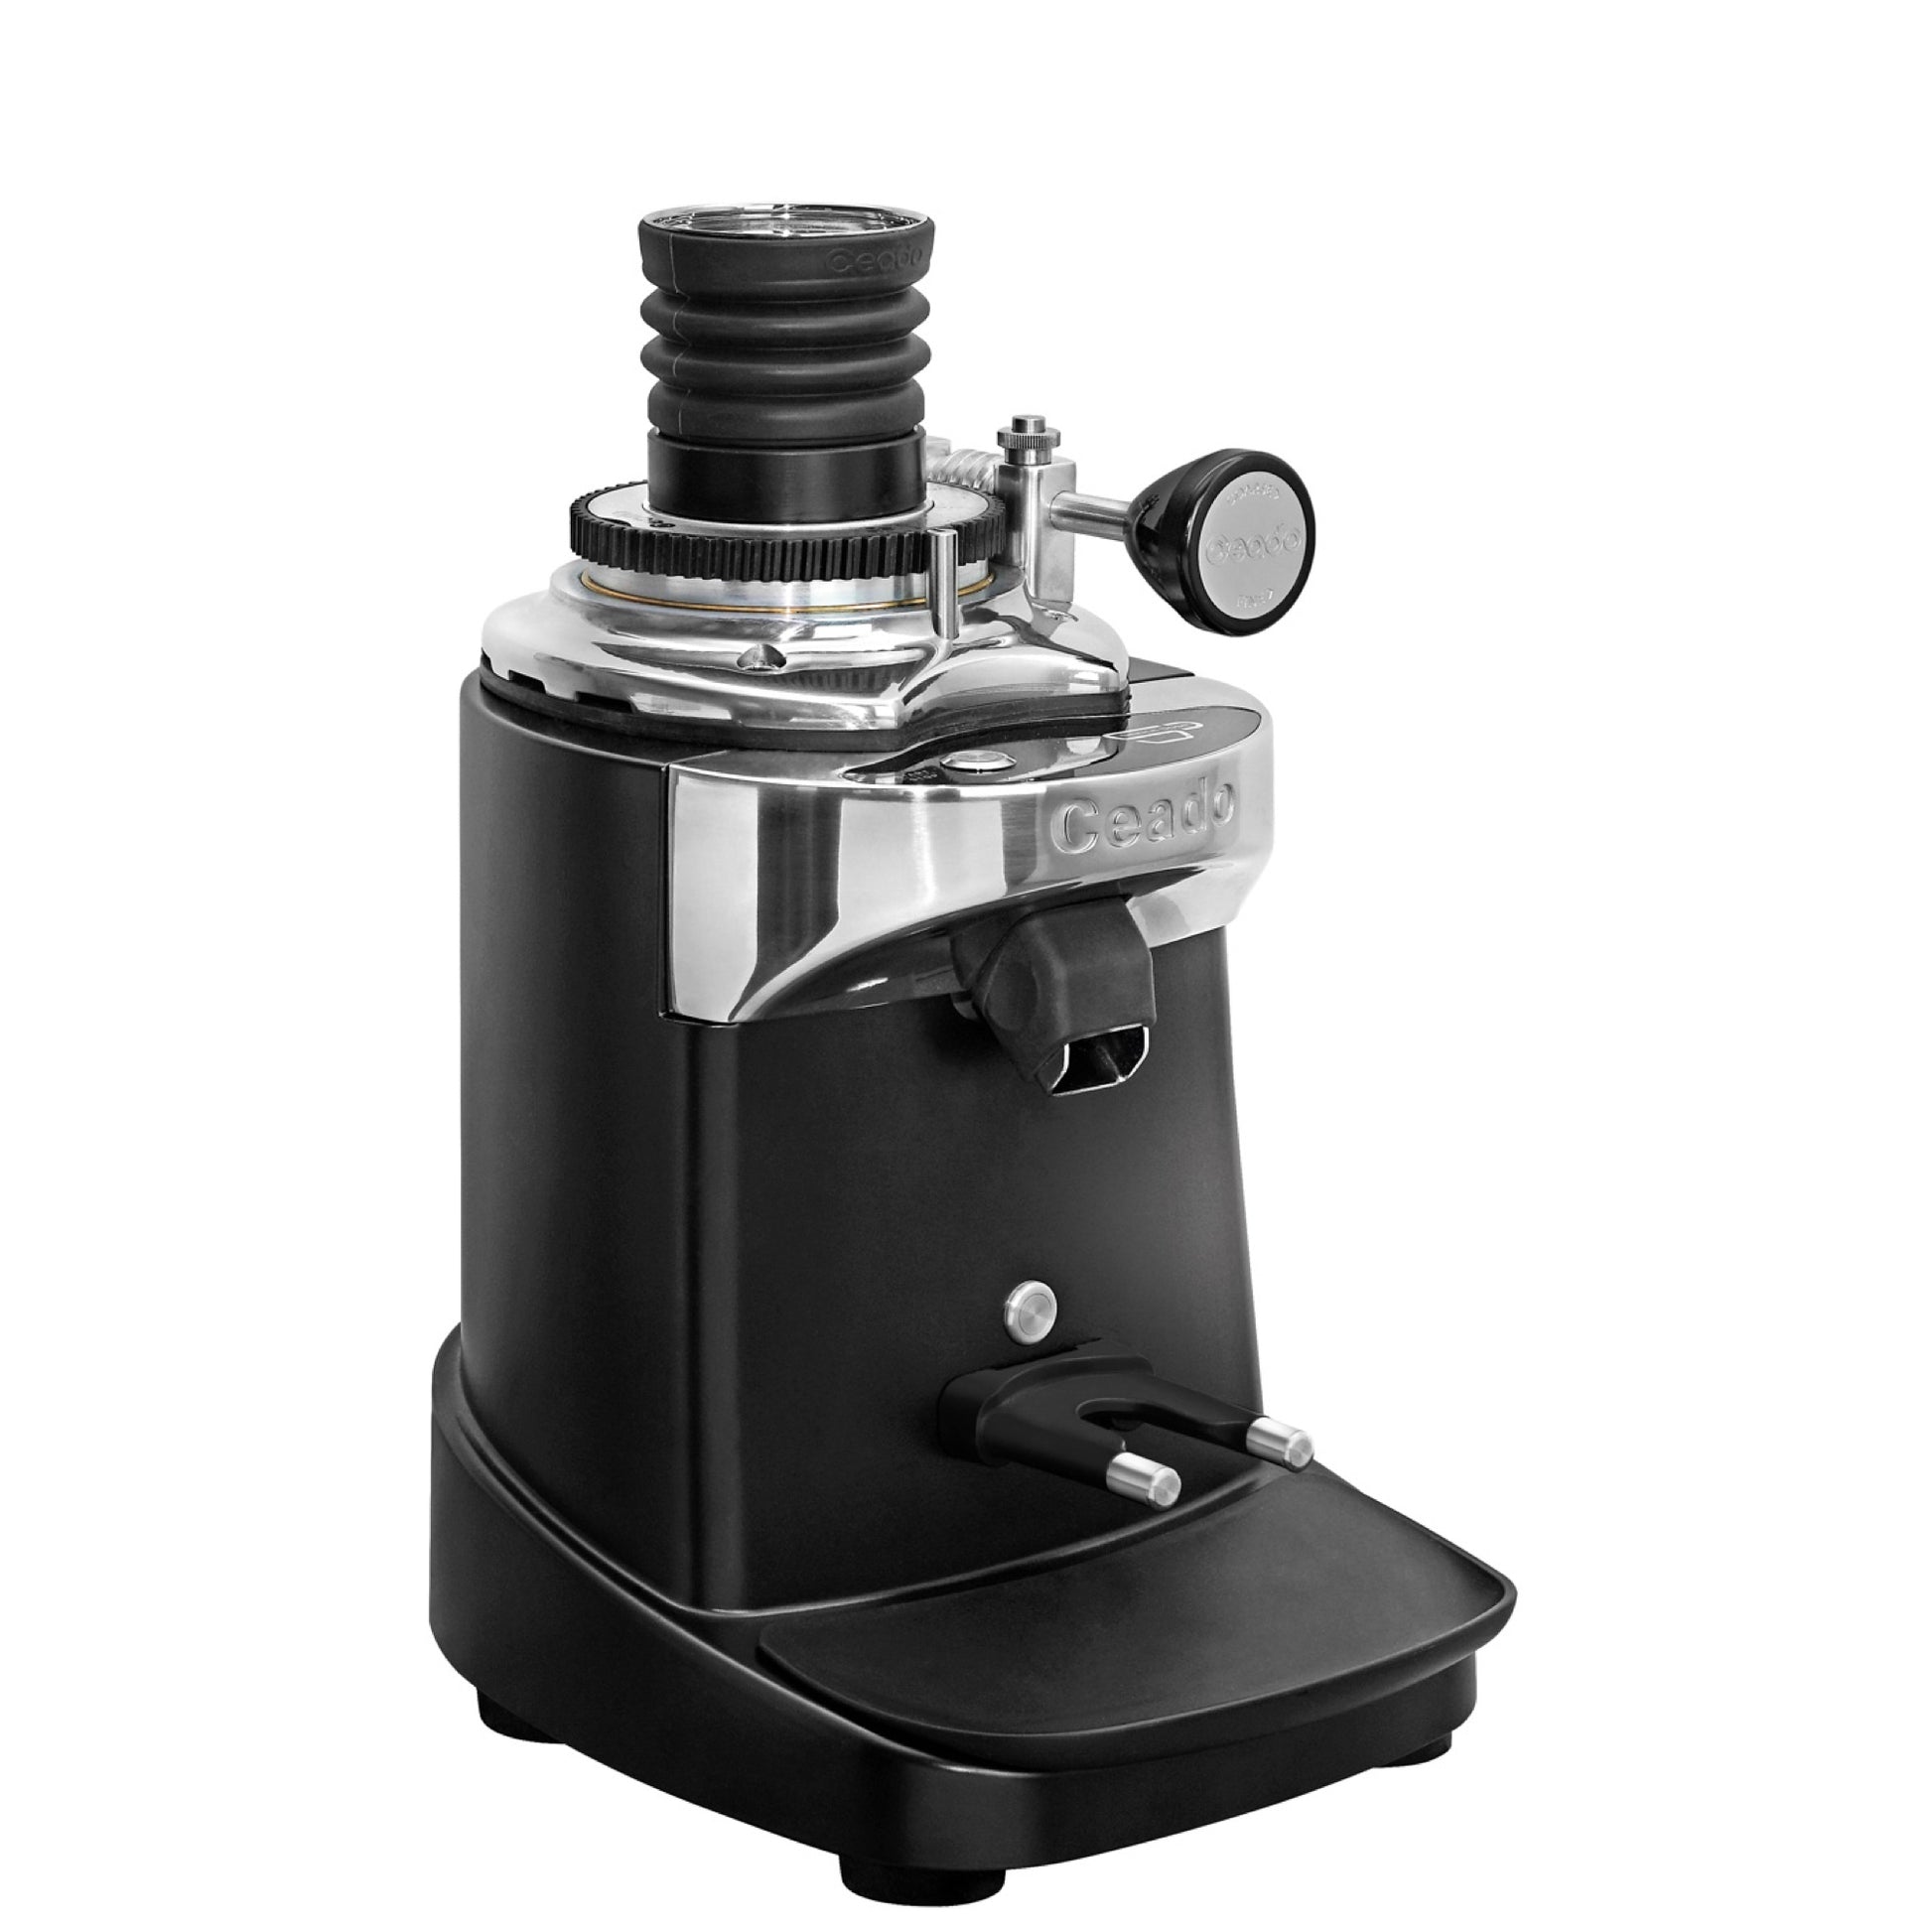 Ceado Coffee grinder E37SD - Gigi-grinder